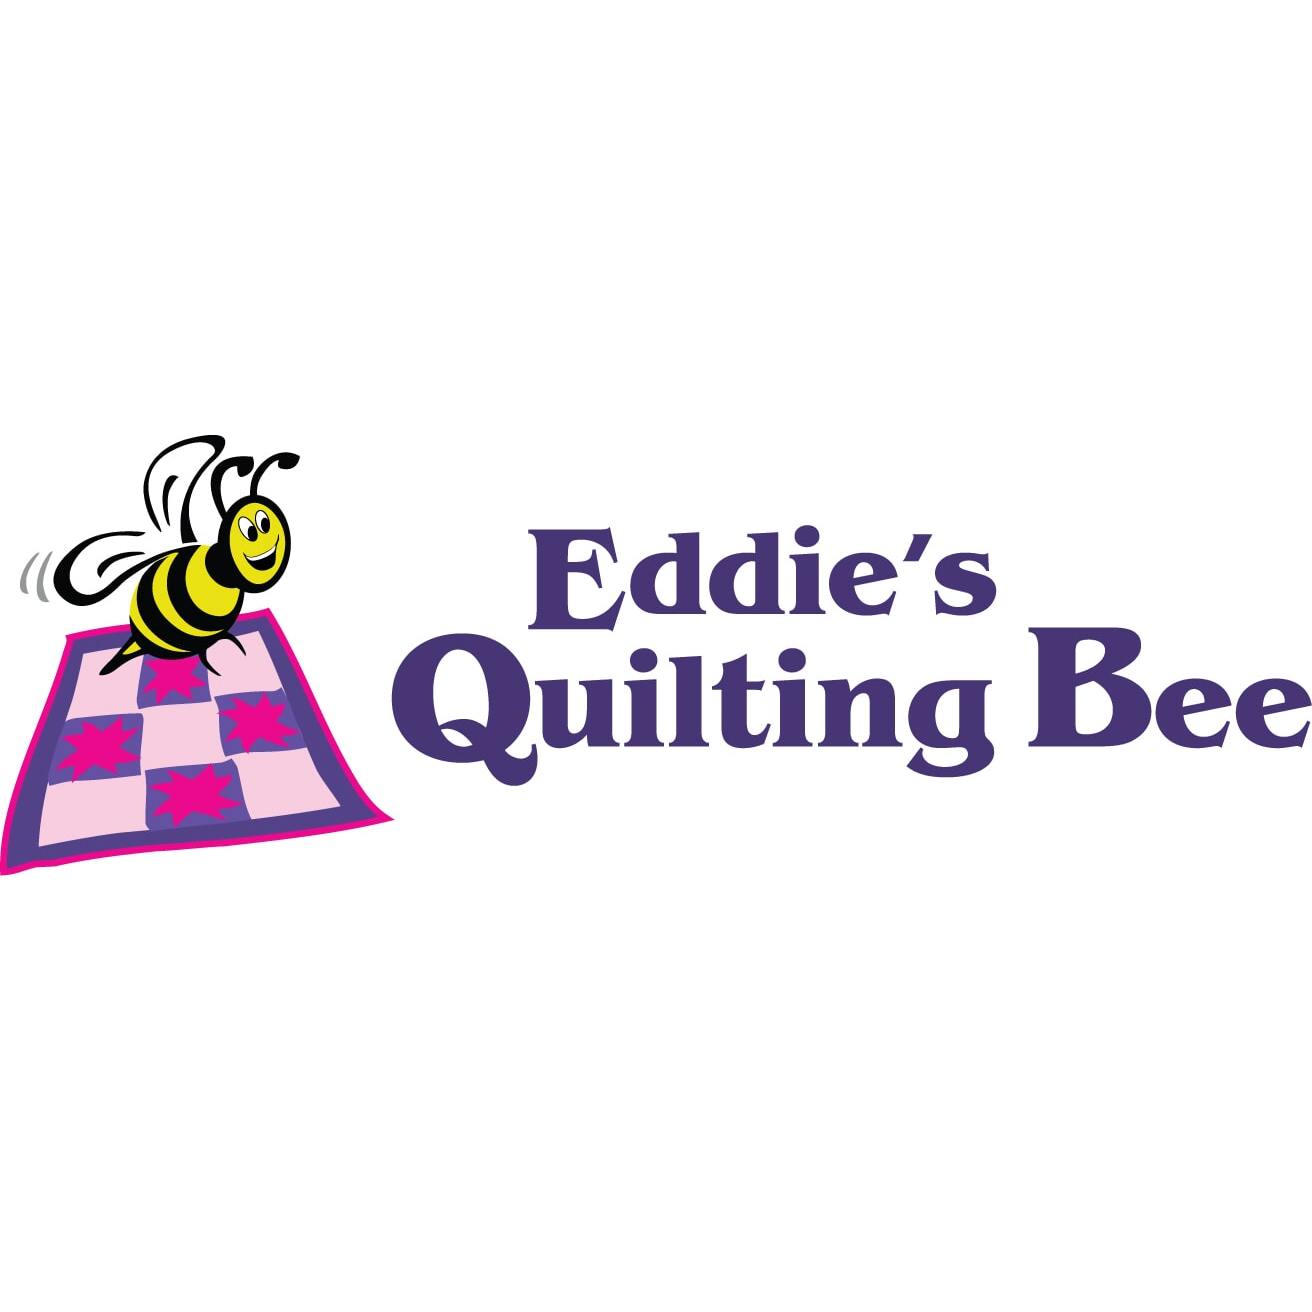 Eddie's Quilting Bee Photo